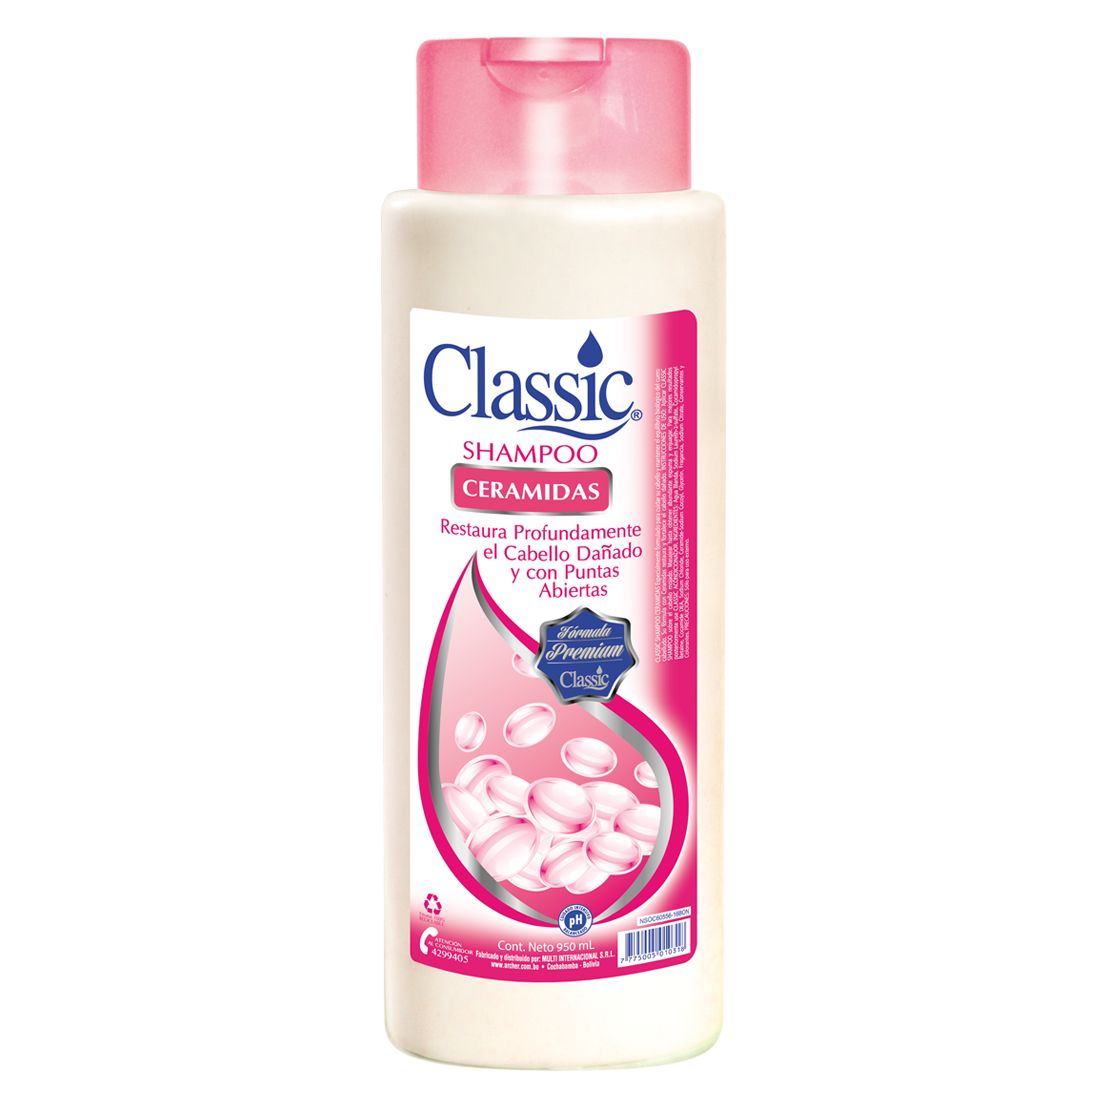 Shampoo Ceramidas CLASSIC 950 mL